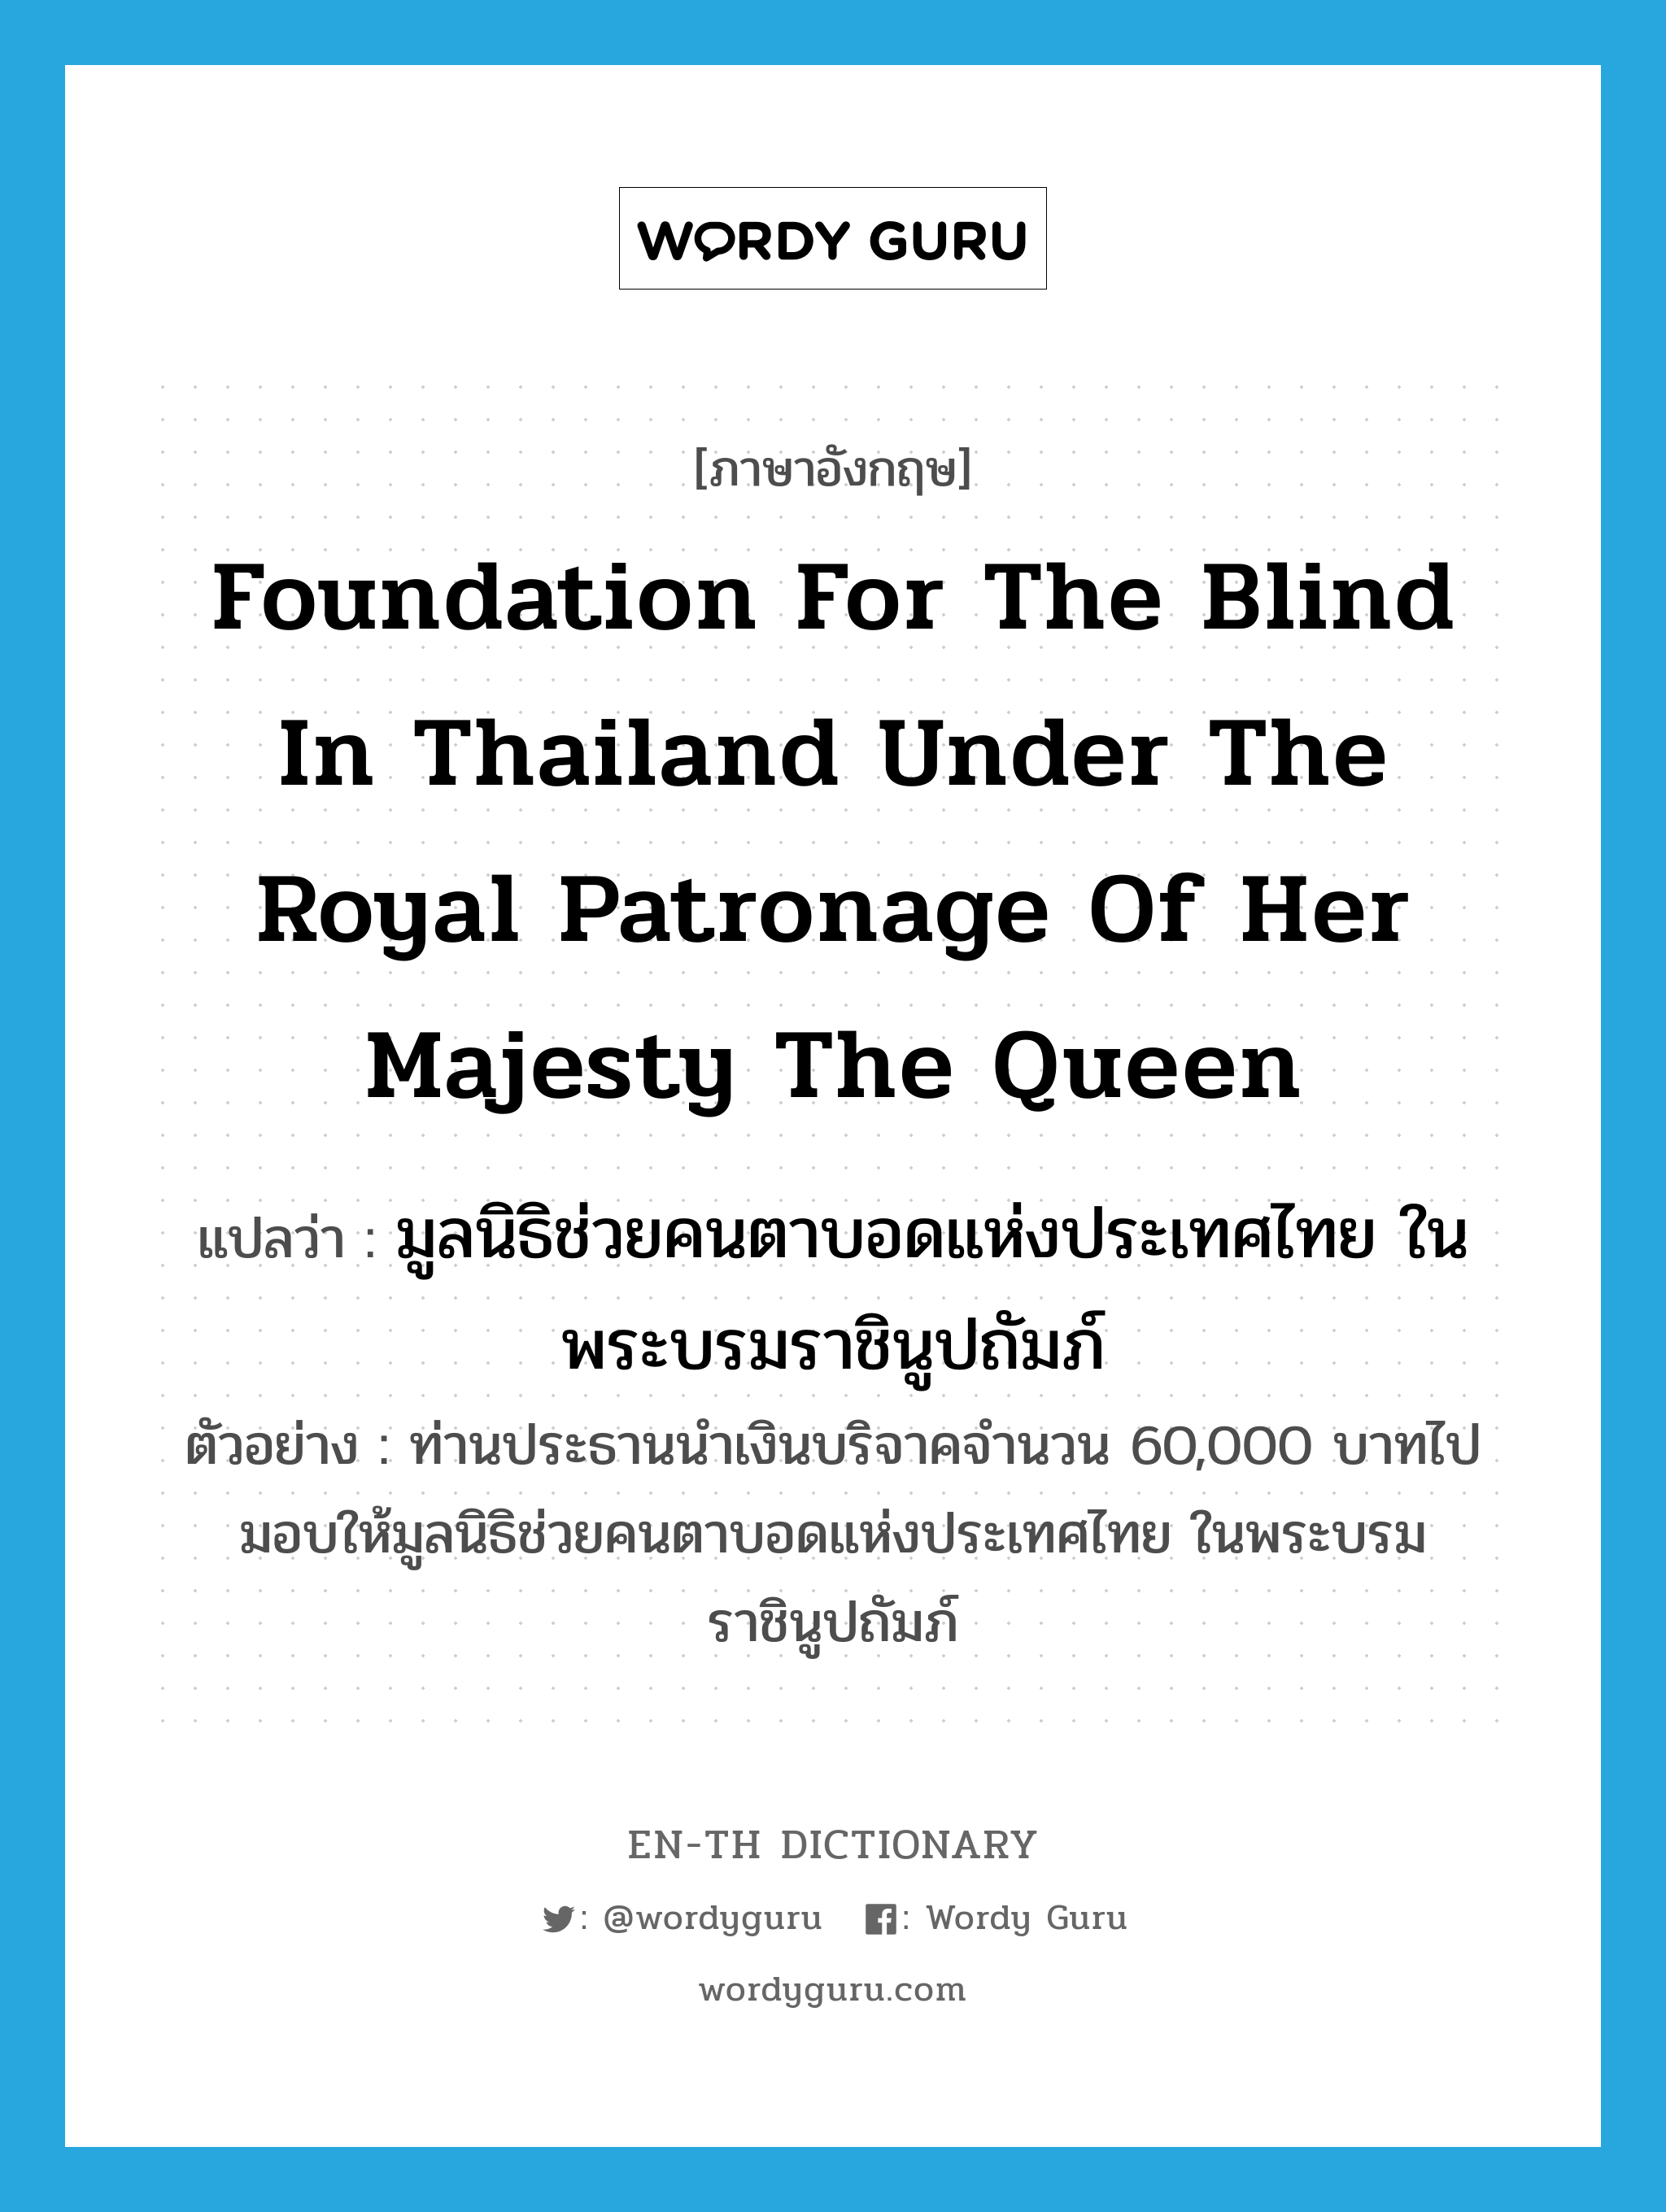 มูลนิธิช่วยคนตาบอดแห่งประเทศไทย ในพระบรมราชินูปถัมภ์ ภาษาอังกฤษ?, คำศัพท์ภาษาอังกฤษ มูลนิธิช่วยคนตาบอดแห่งประเทศไทย ในพระบรมราชินูปถัมภ์ แปลว่า Foundation for the Blind in Thailand under the Royal Patronage of Her Majesty the Queen ประเภท N ตัวอย่าง ท่านประธานนำเงินบริจาคจำนวน 60,000 บาทไปมอบให้มูลนิธิช่วยคนตาบอดแห่งประเทศไทย ในพระบรมราชินูปถัมภ์ หมวด N